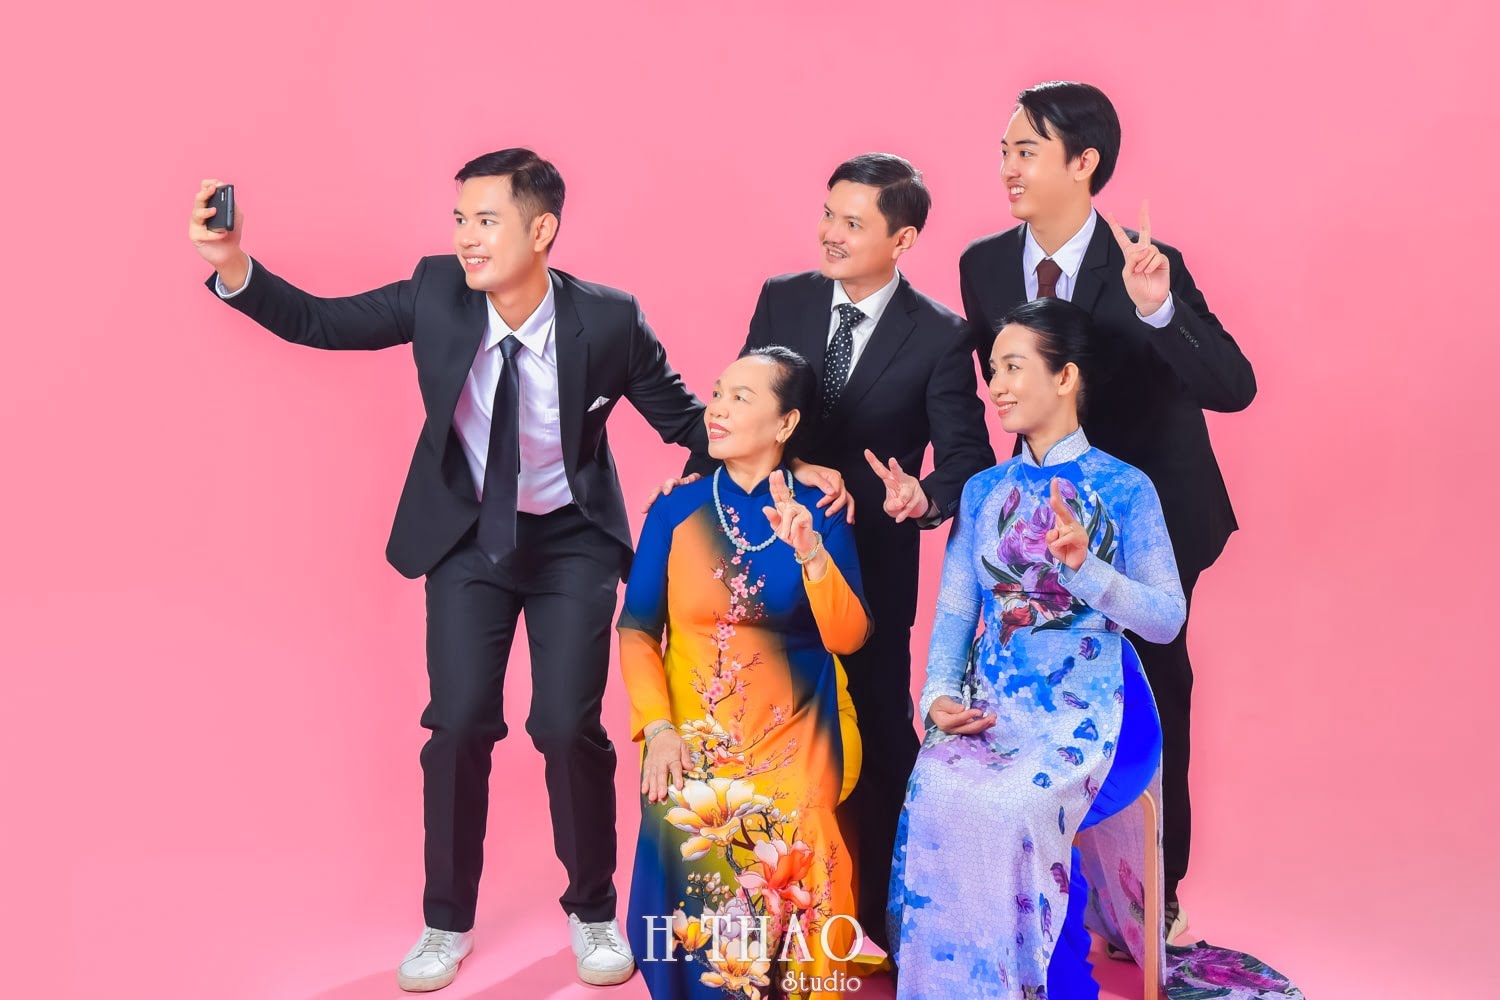 Anh gia dinh 5 min - Bỏ túi 3 bí quyết chụp ảnh gia đình đẹp - HThao Studio